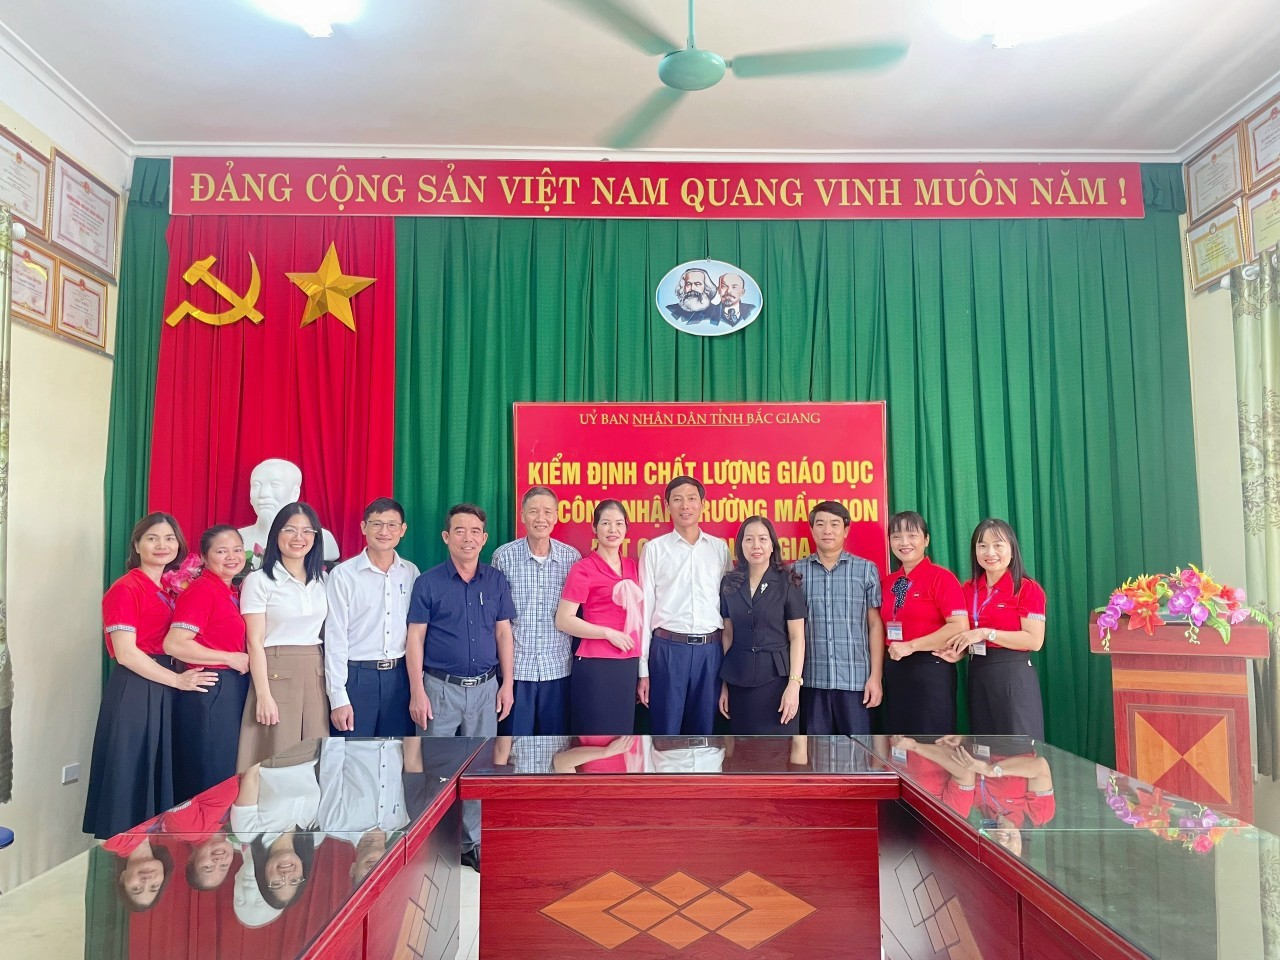 Trường mầm non Việt Lập huyện Tân Yên, tỉnh Bắc Giang đạt kiểm định chất lượng giáo dục cấp độ 3 - chuẩn quốc gia mức độ 2